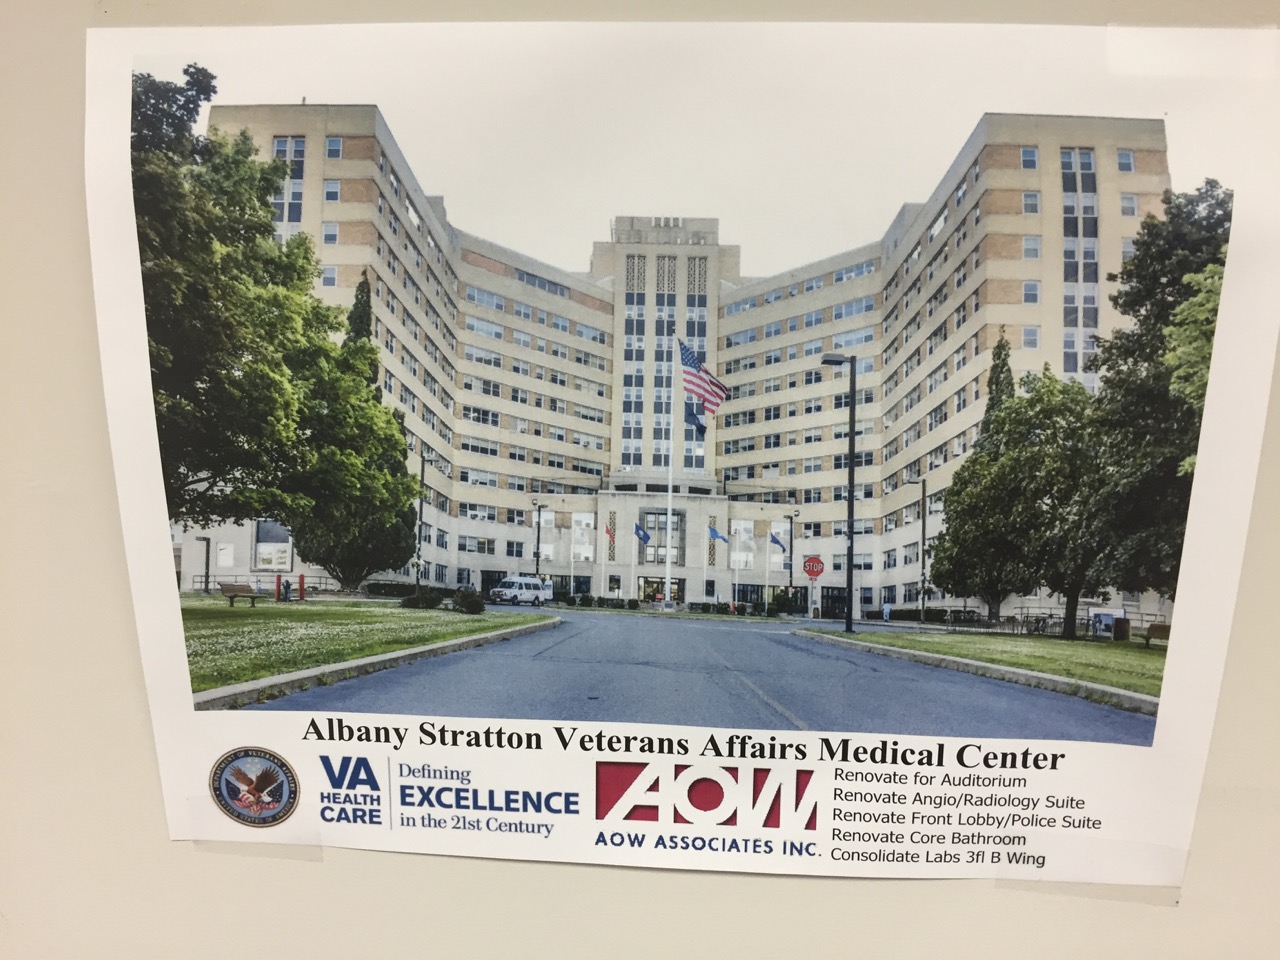 VA Health Care Center